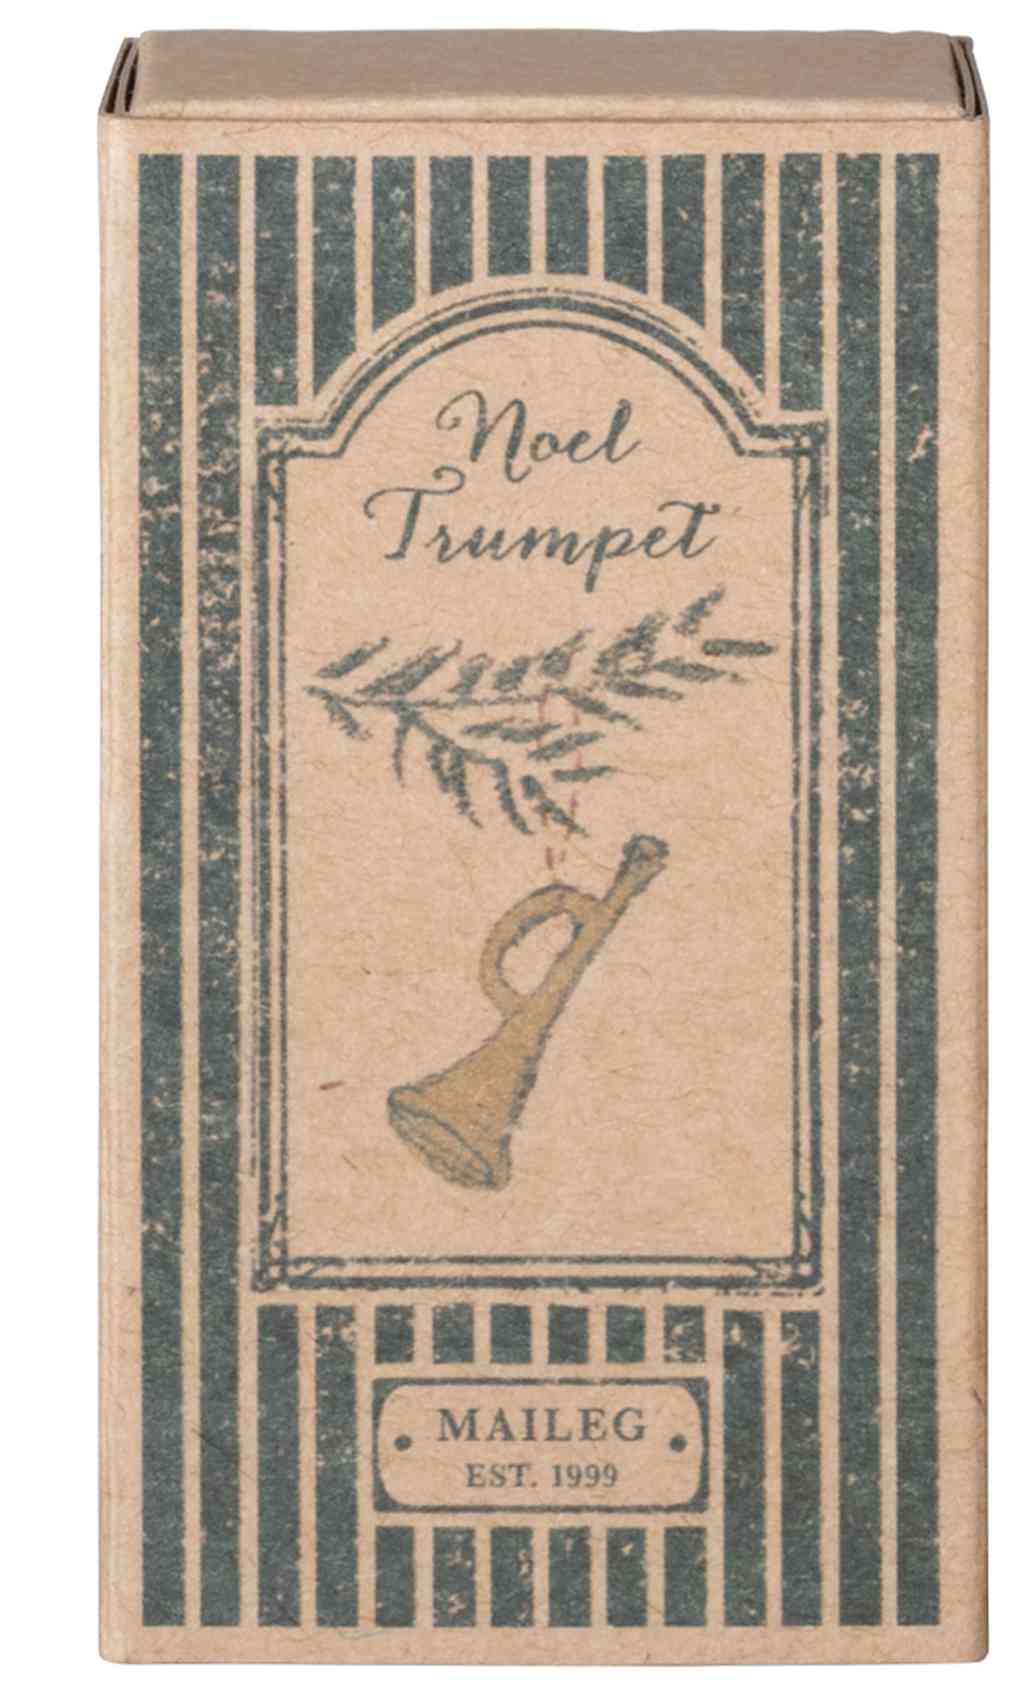 Verpackung der maileg trompete metallanhänger für weihnachten und adventszeit in goldfarben, bei luiseundfritz.de